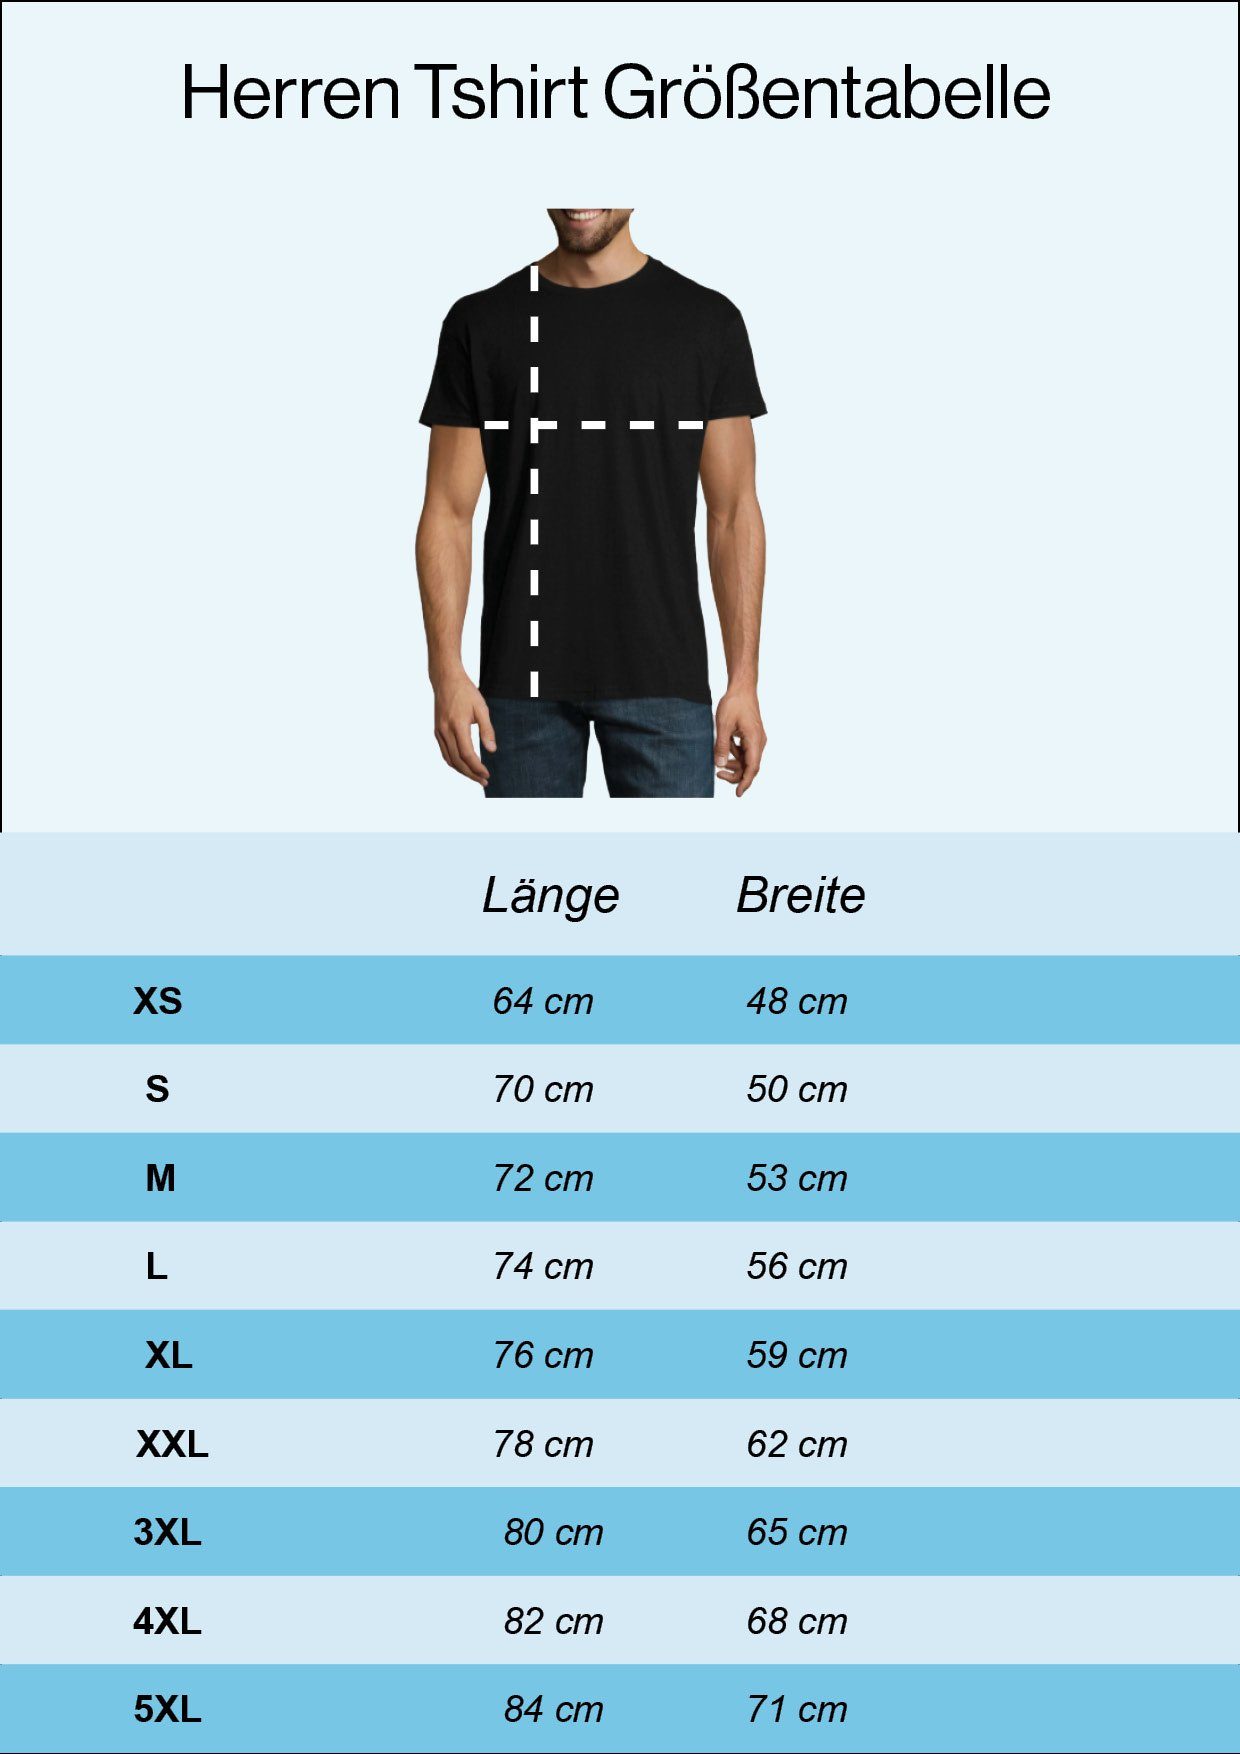 Das Shirt Youth trendigem Chrom Schwarz Frontprint Designz mit Ist Biker T-Shirt